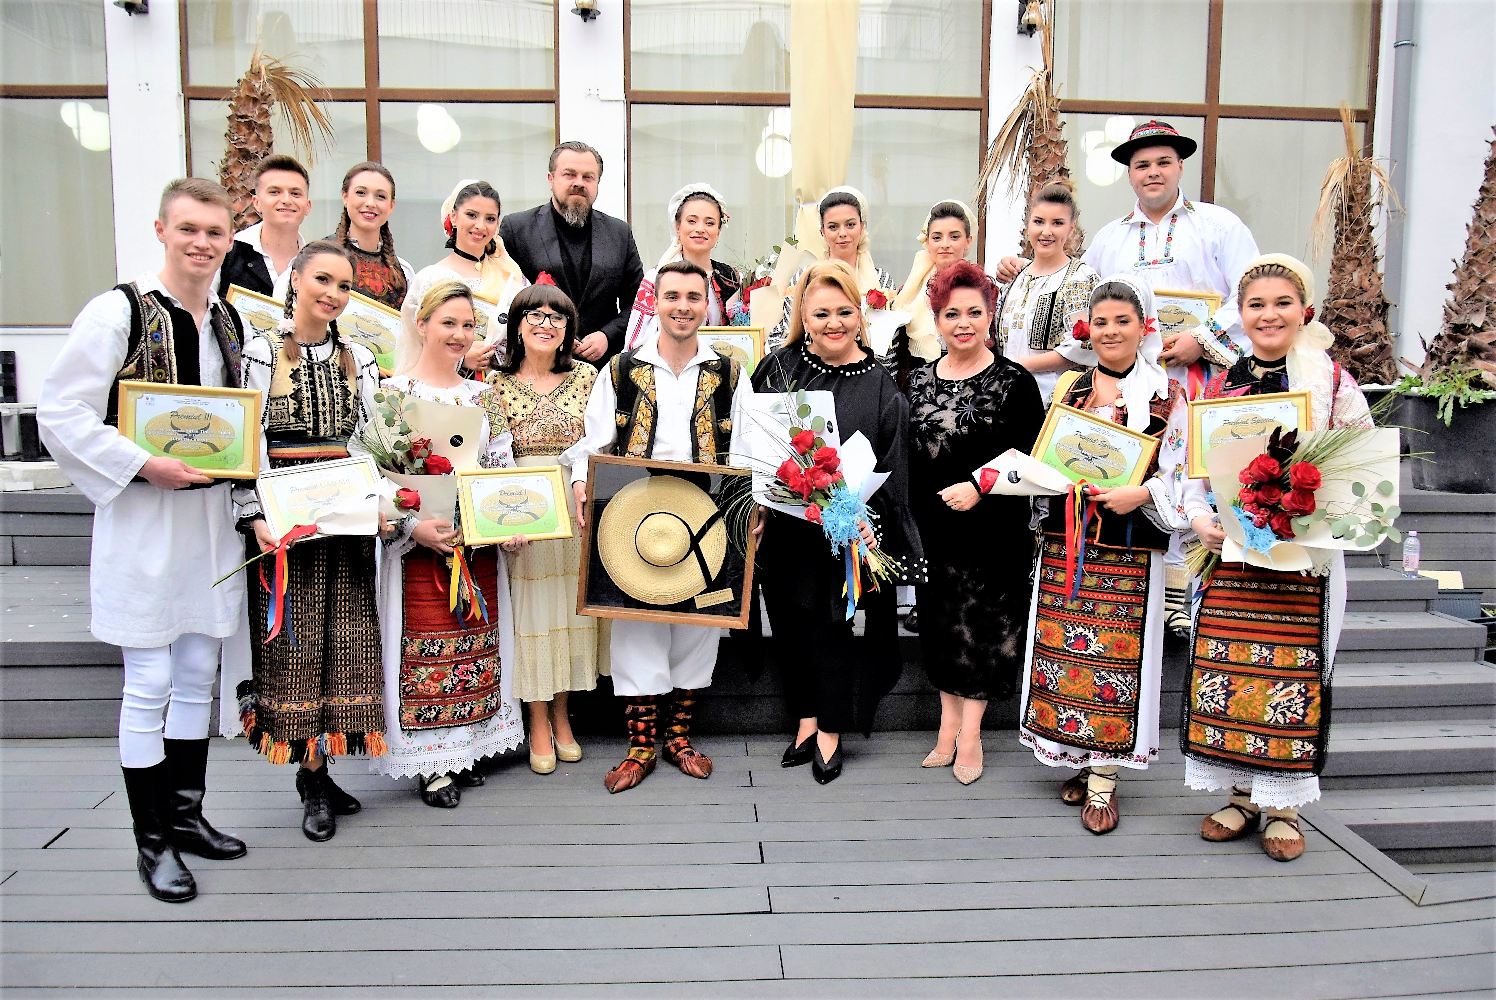 9 ore de folclor la Festivalul - Concurs „Lucreția Ciobanu” 2023